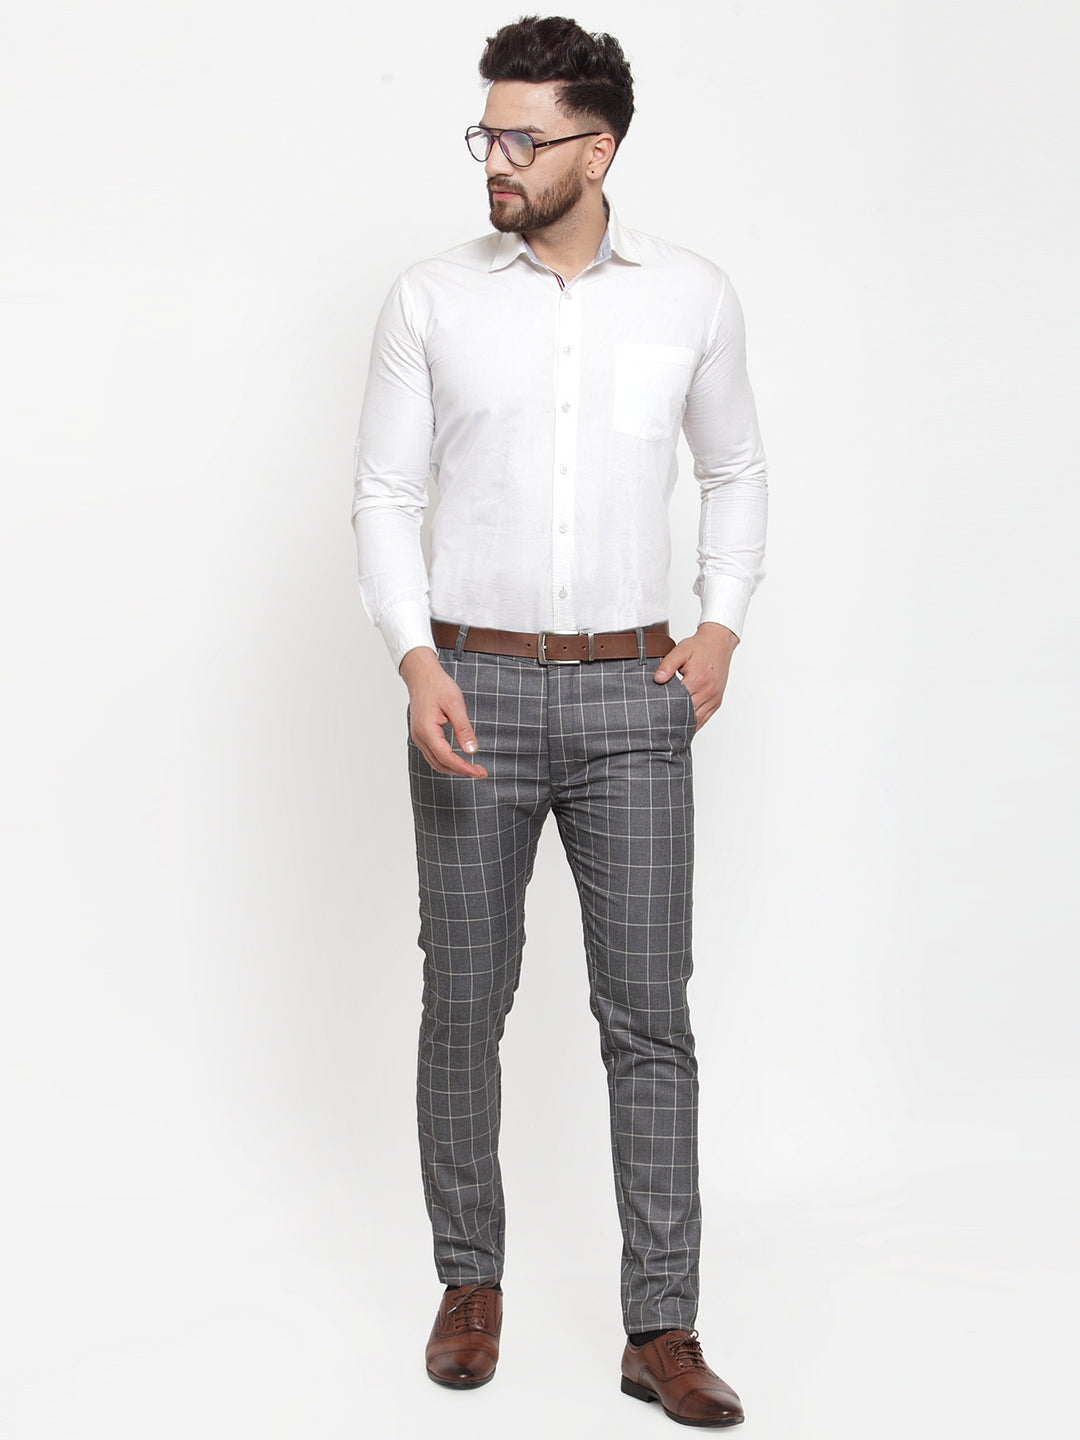 Grey Suit Trouser Plaid Pants Attires Ideas With White Shirt Plaid   Fashion design